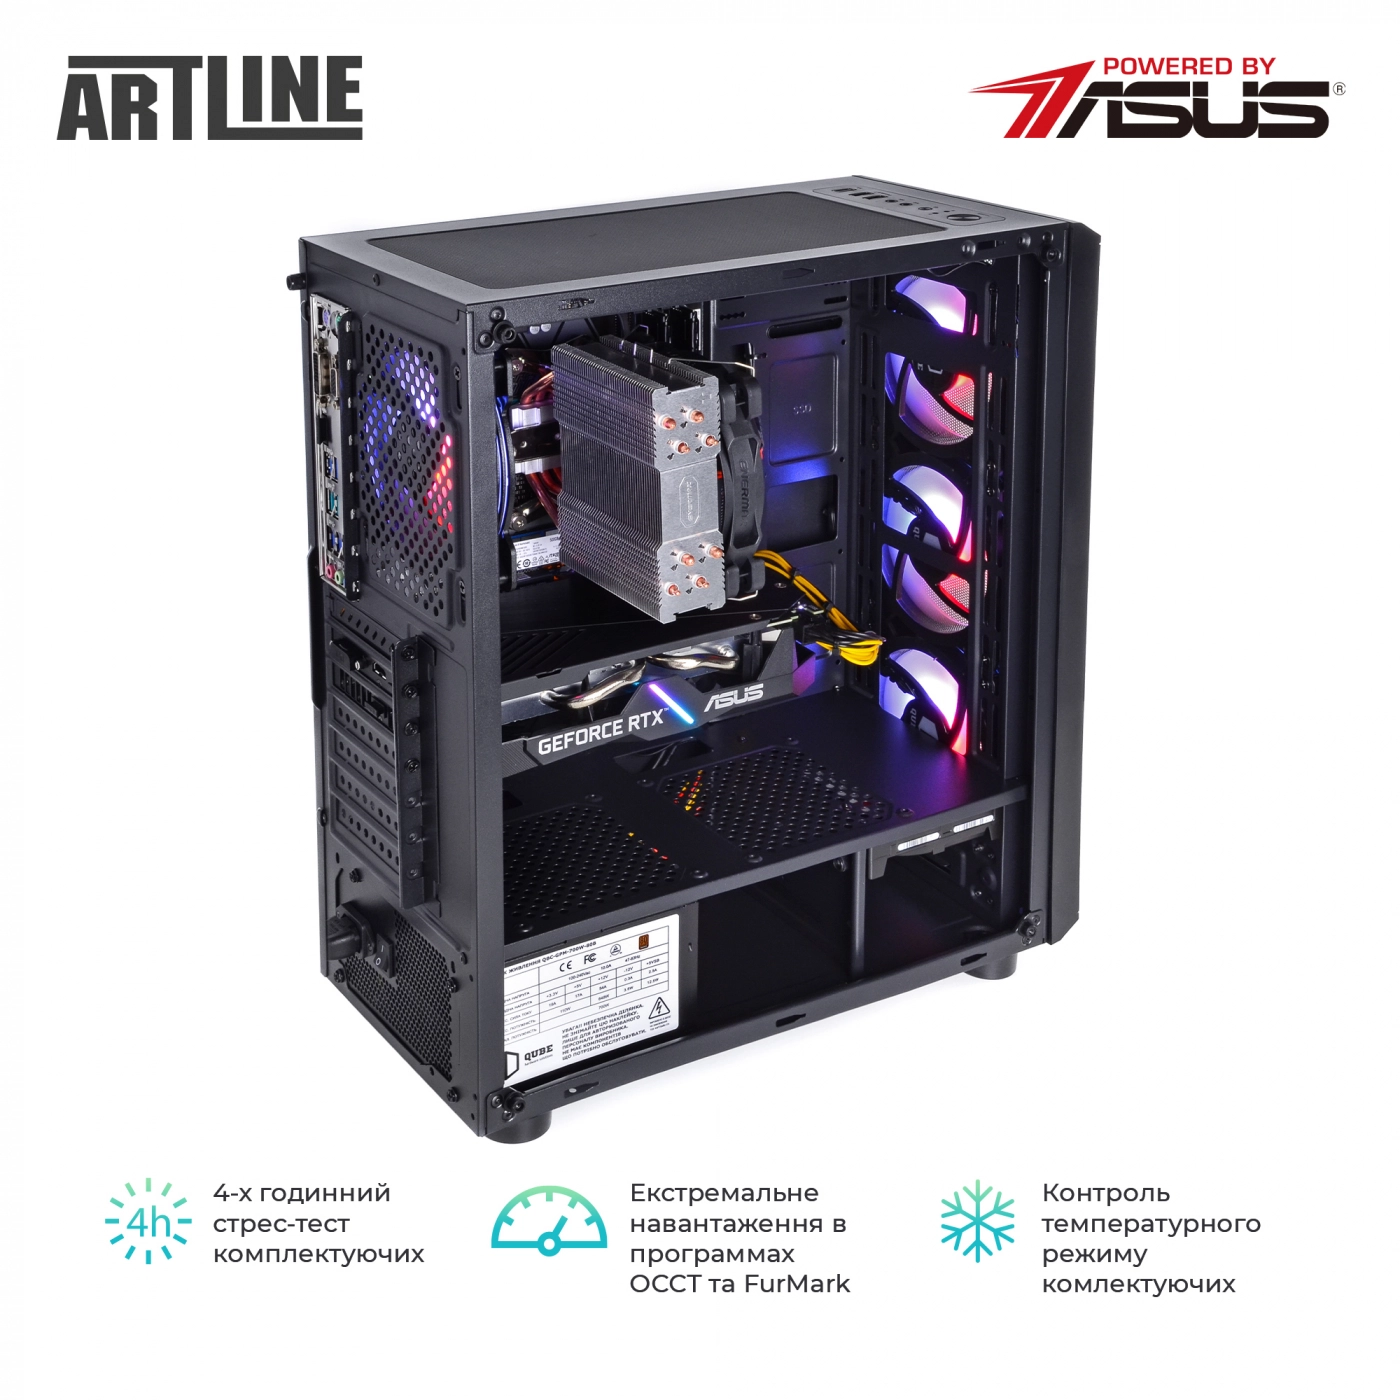 Купить Компьютер ARTLINE Gaming X73v30 - фото 9